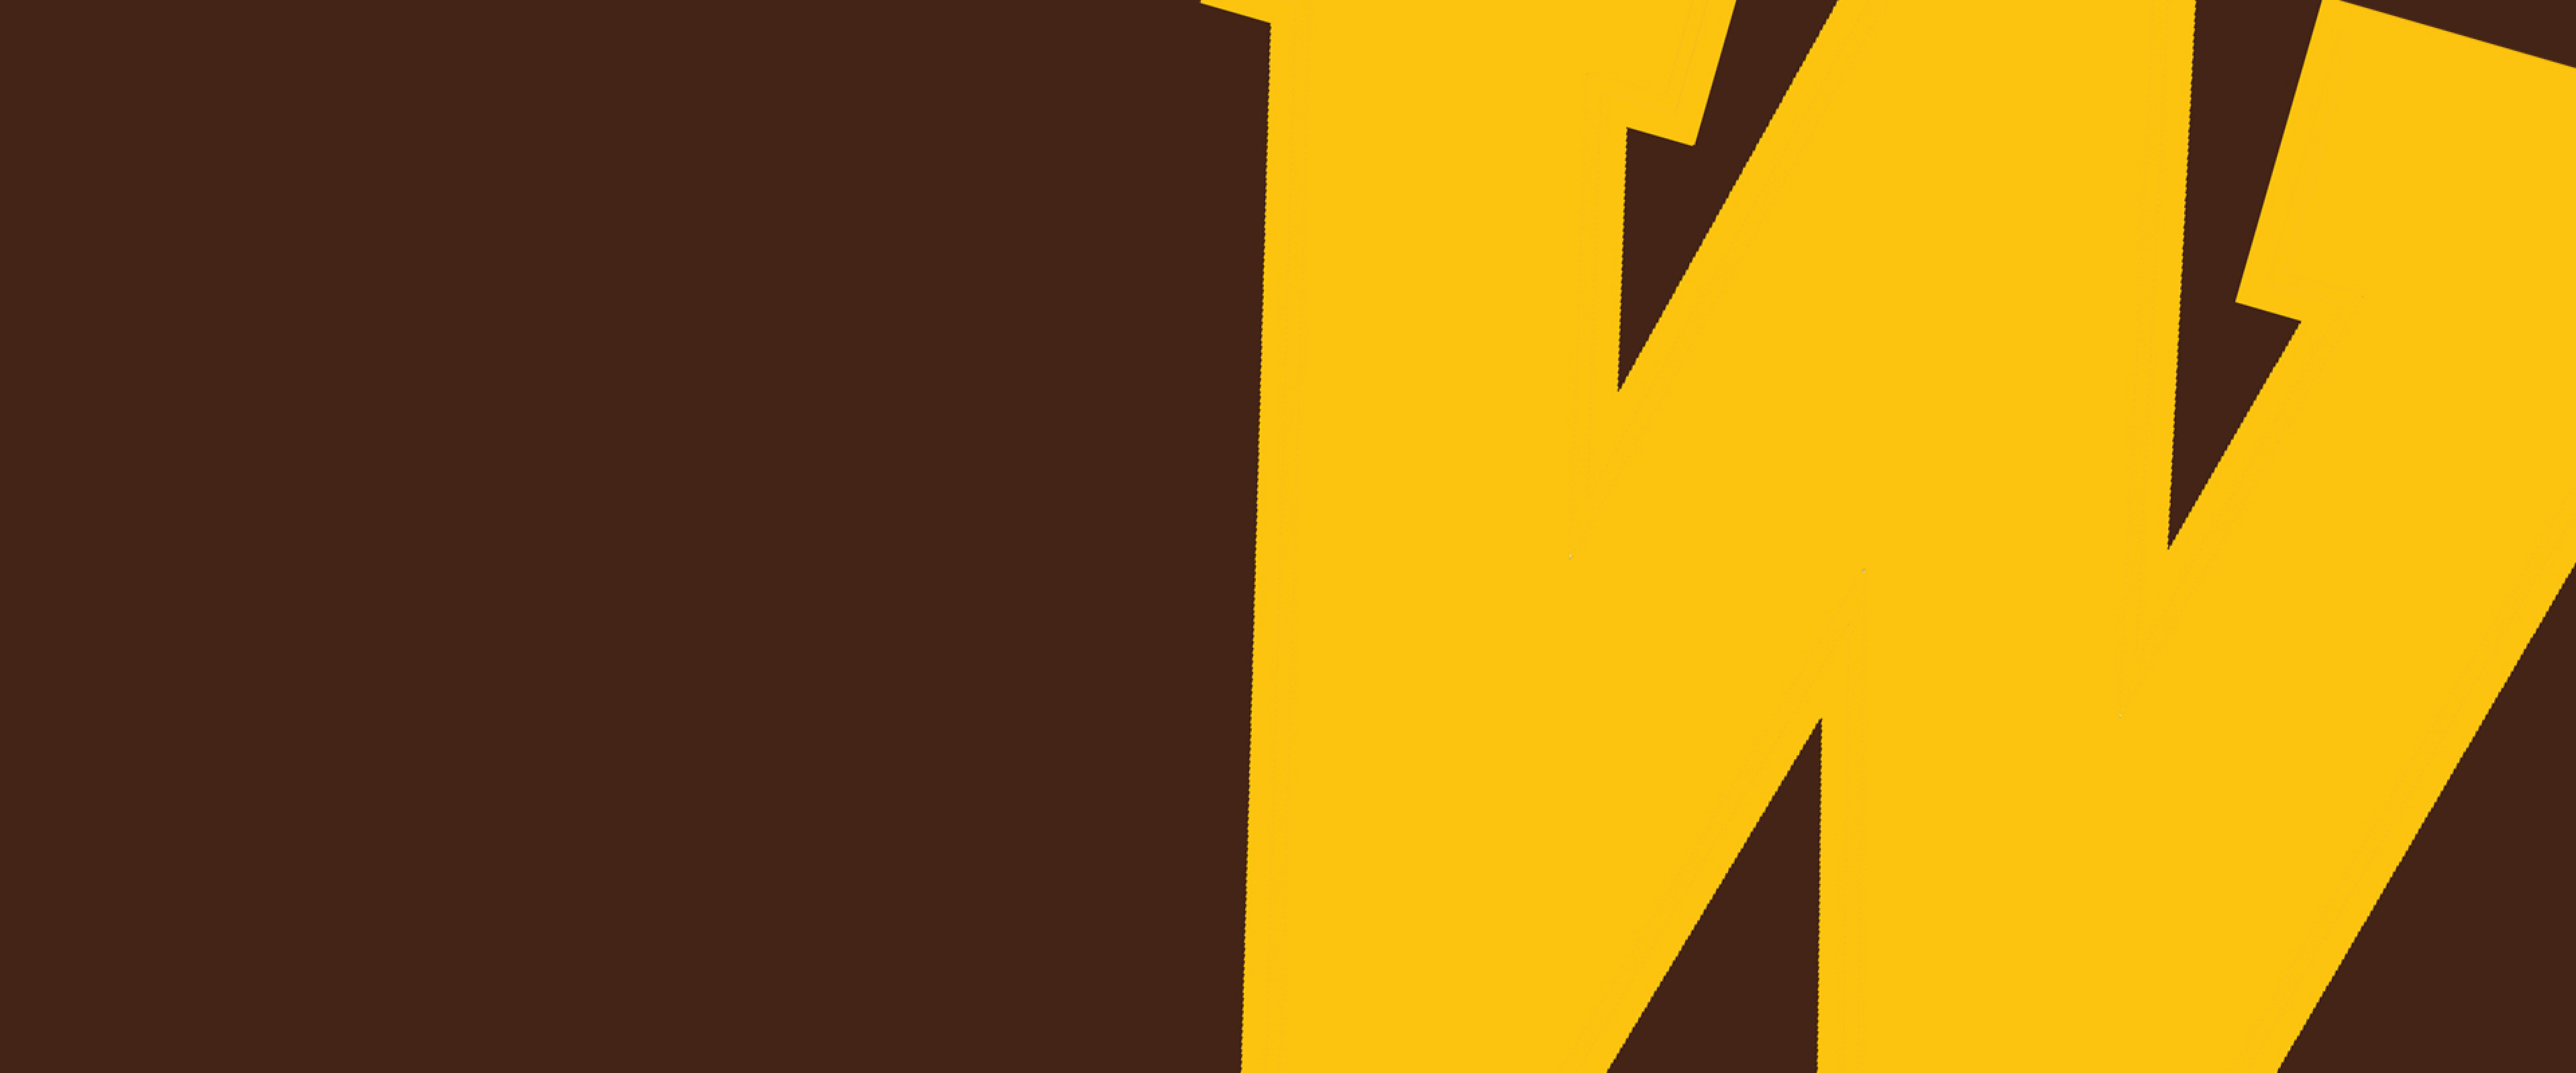 WMU logo